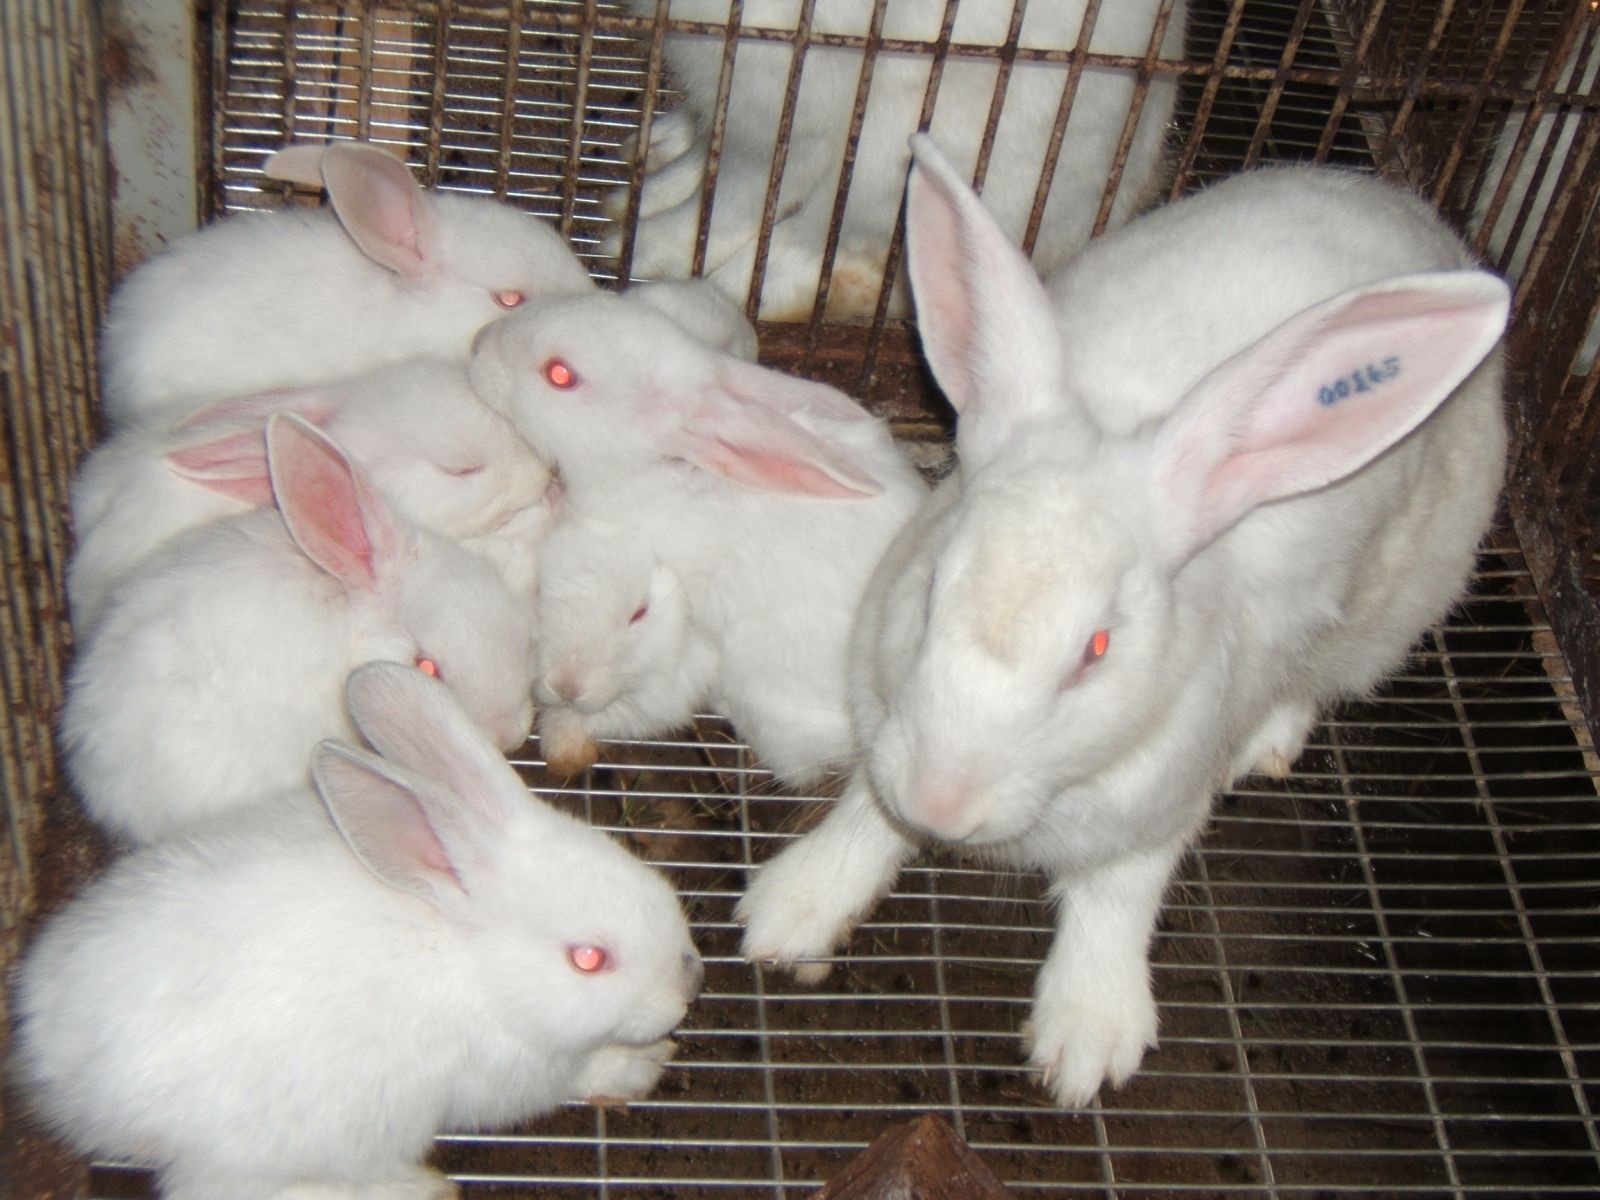 
Vào năm 2019, anh Lẹo đã quyết định đầu tư chuồng trại nuôi thử nghiệm 50 con thỏ New Zealand với số vốn đầu tư là gần 50 triệu đồng
